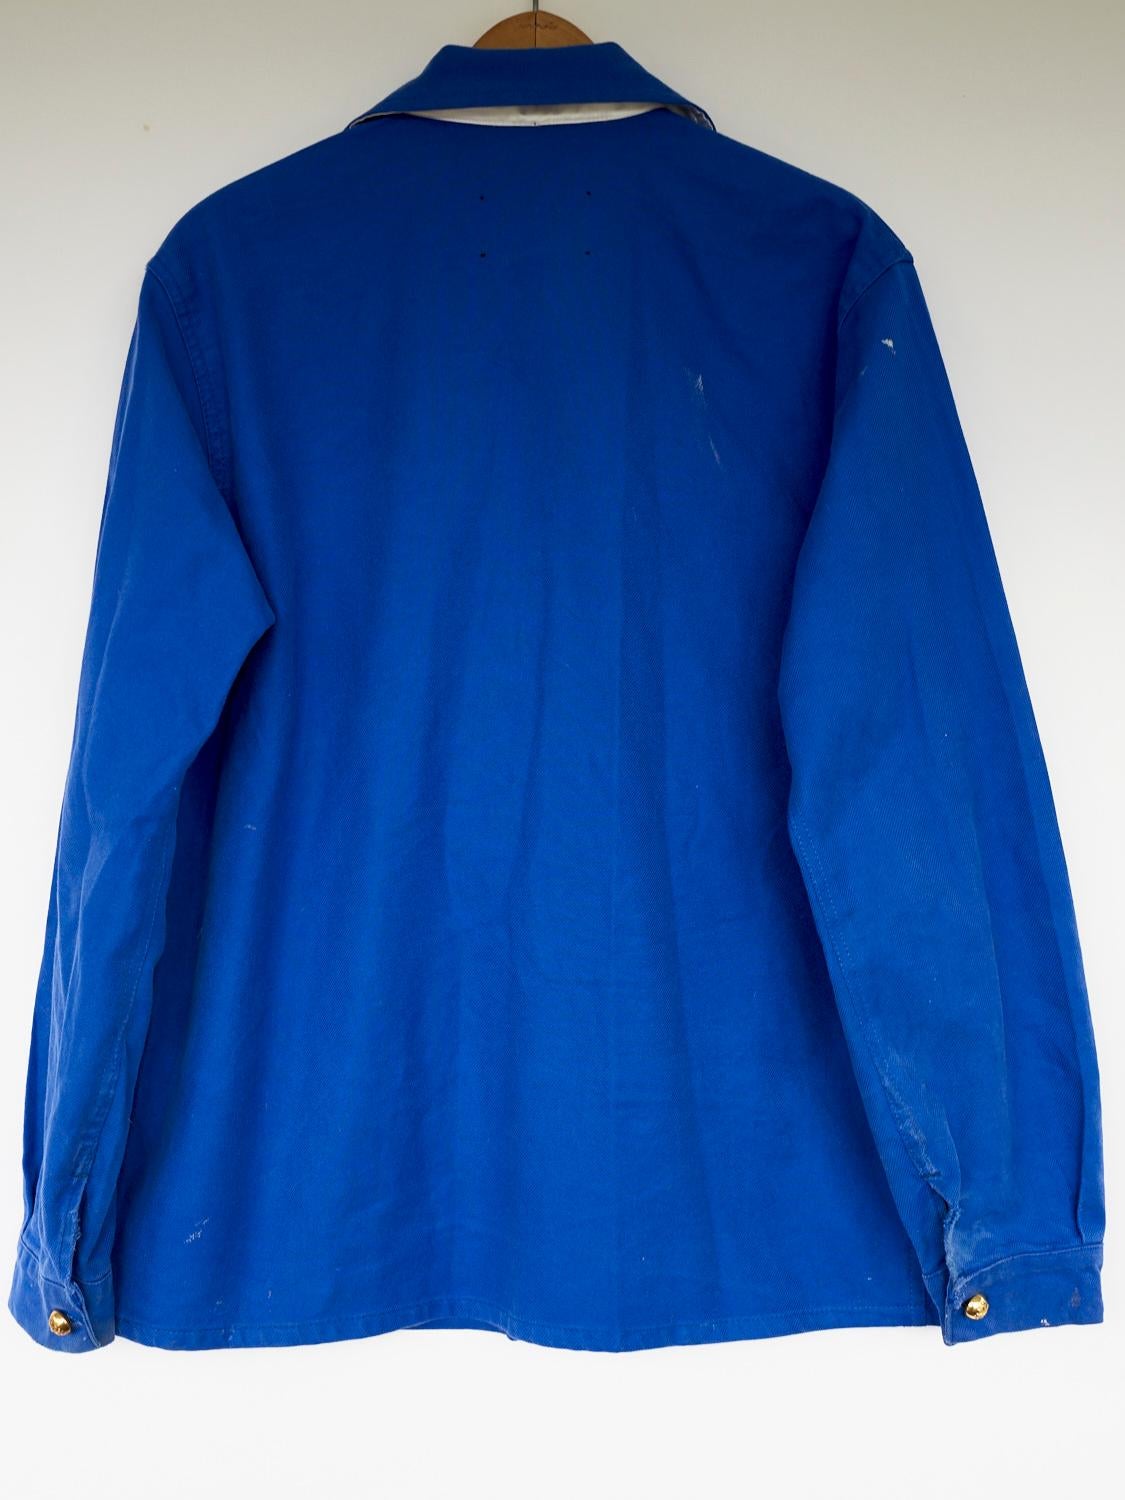 Embellished Jacket Cobalt Blue Tweed Gold Button 
J Dauphin 2